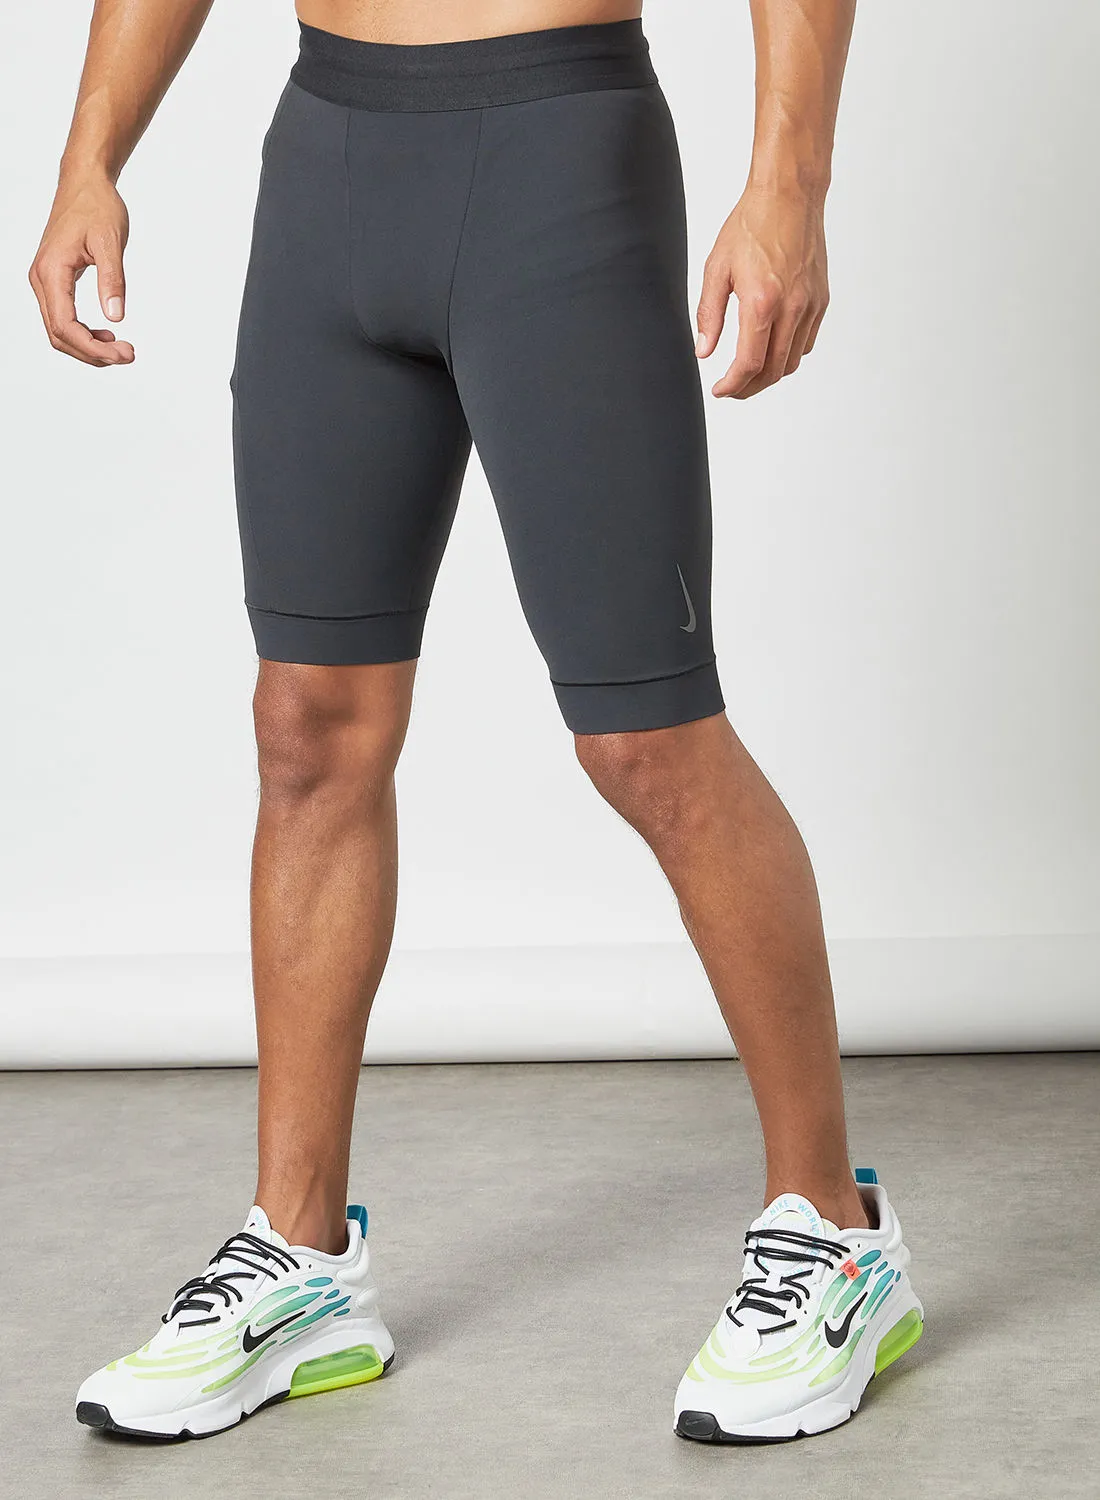 Nike Dry Yoga Shorts Black/Iron Grey